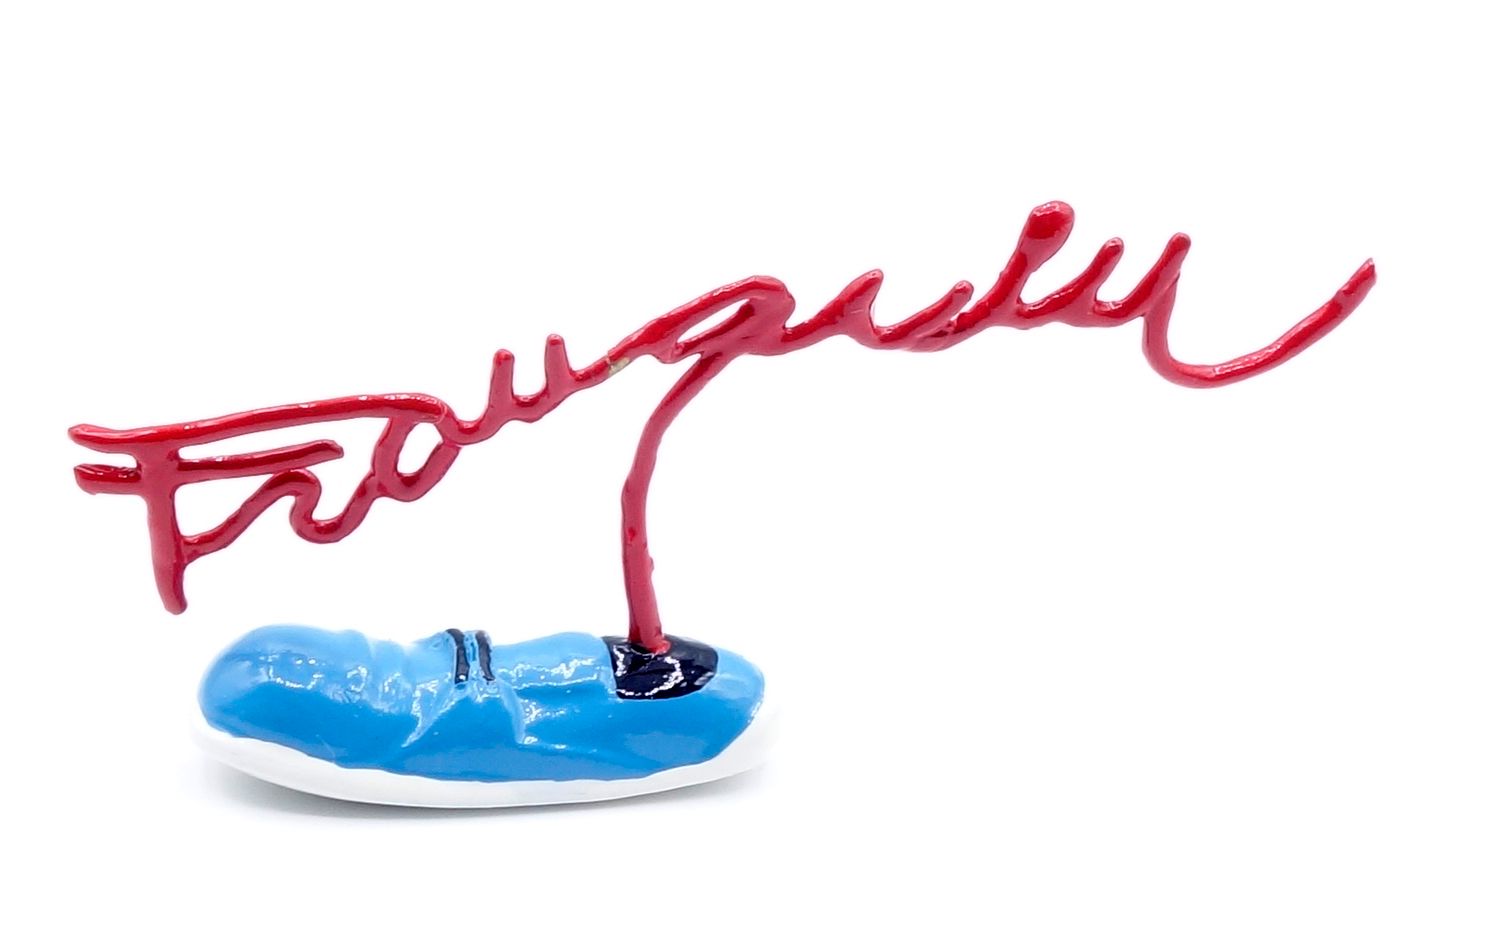 André FRANQUIN 
PIXI: Signatures Franquin, shoe (3768), 2006, 300 copies, BC